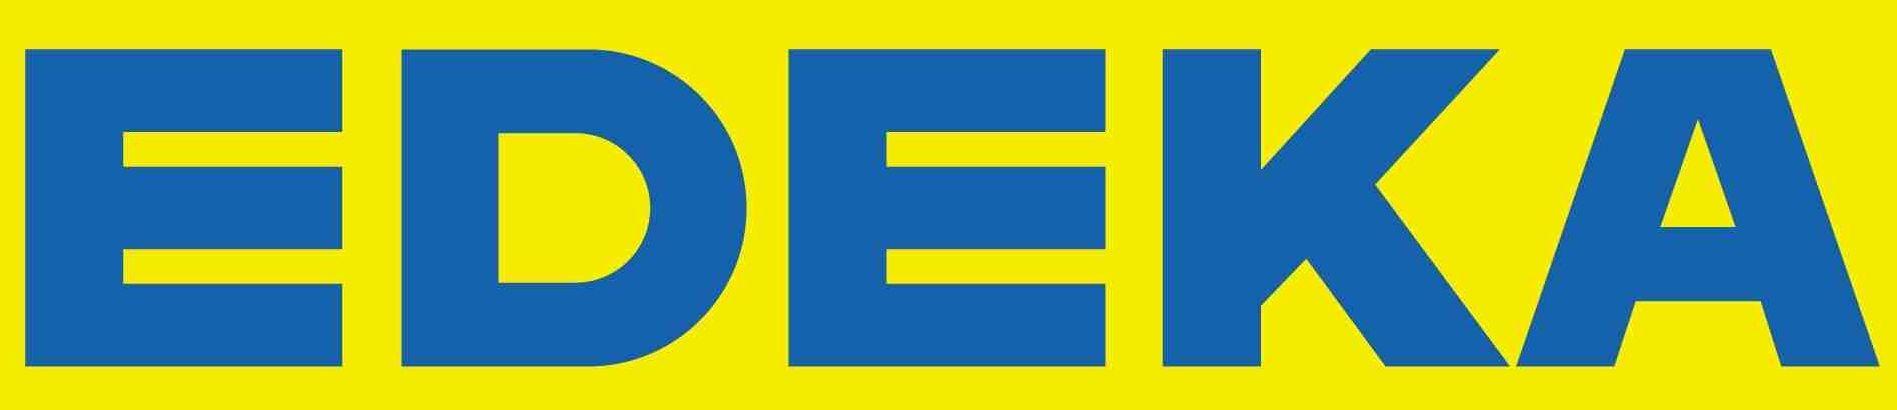 Edeka Logo - Edeka-logo » - Edeka-logo - Allibert